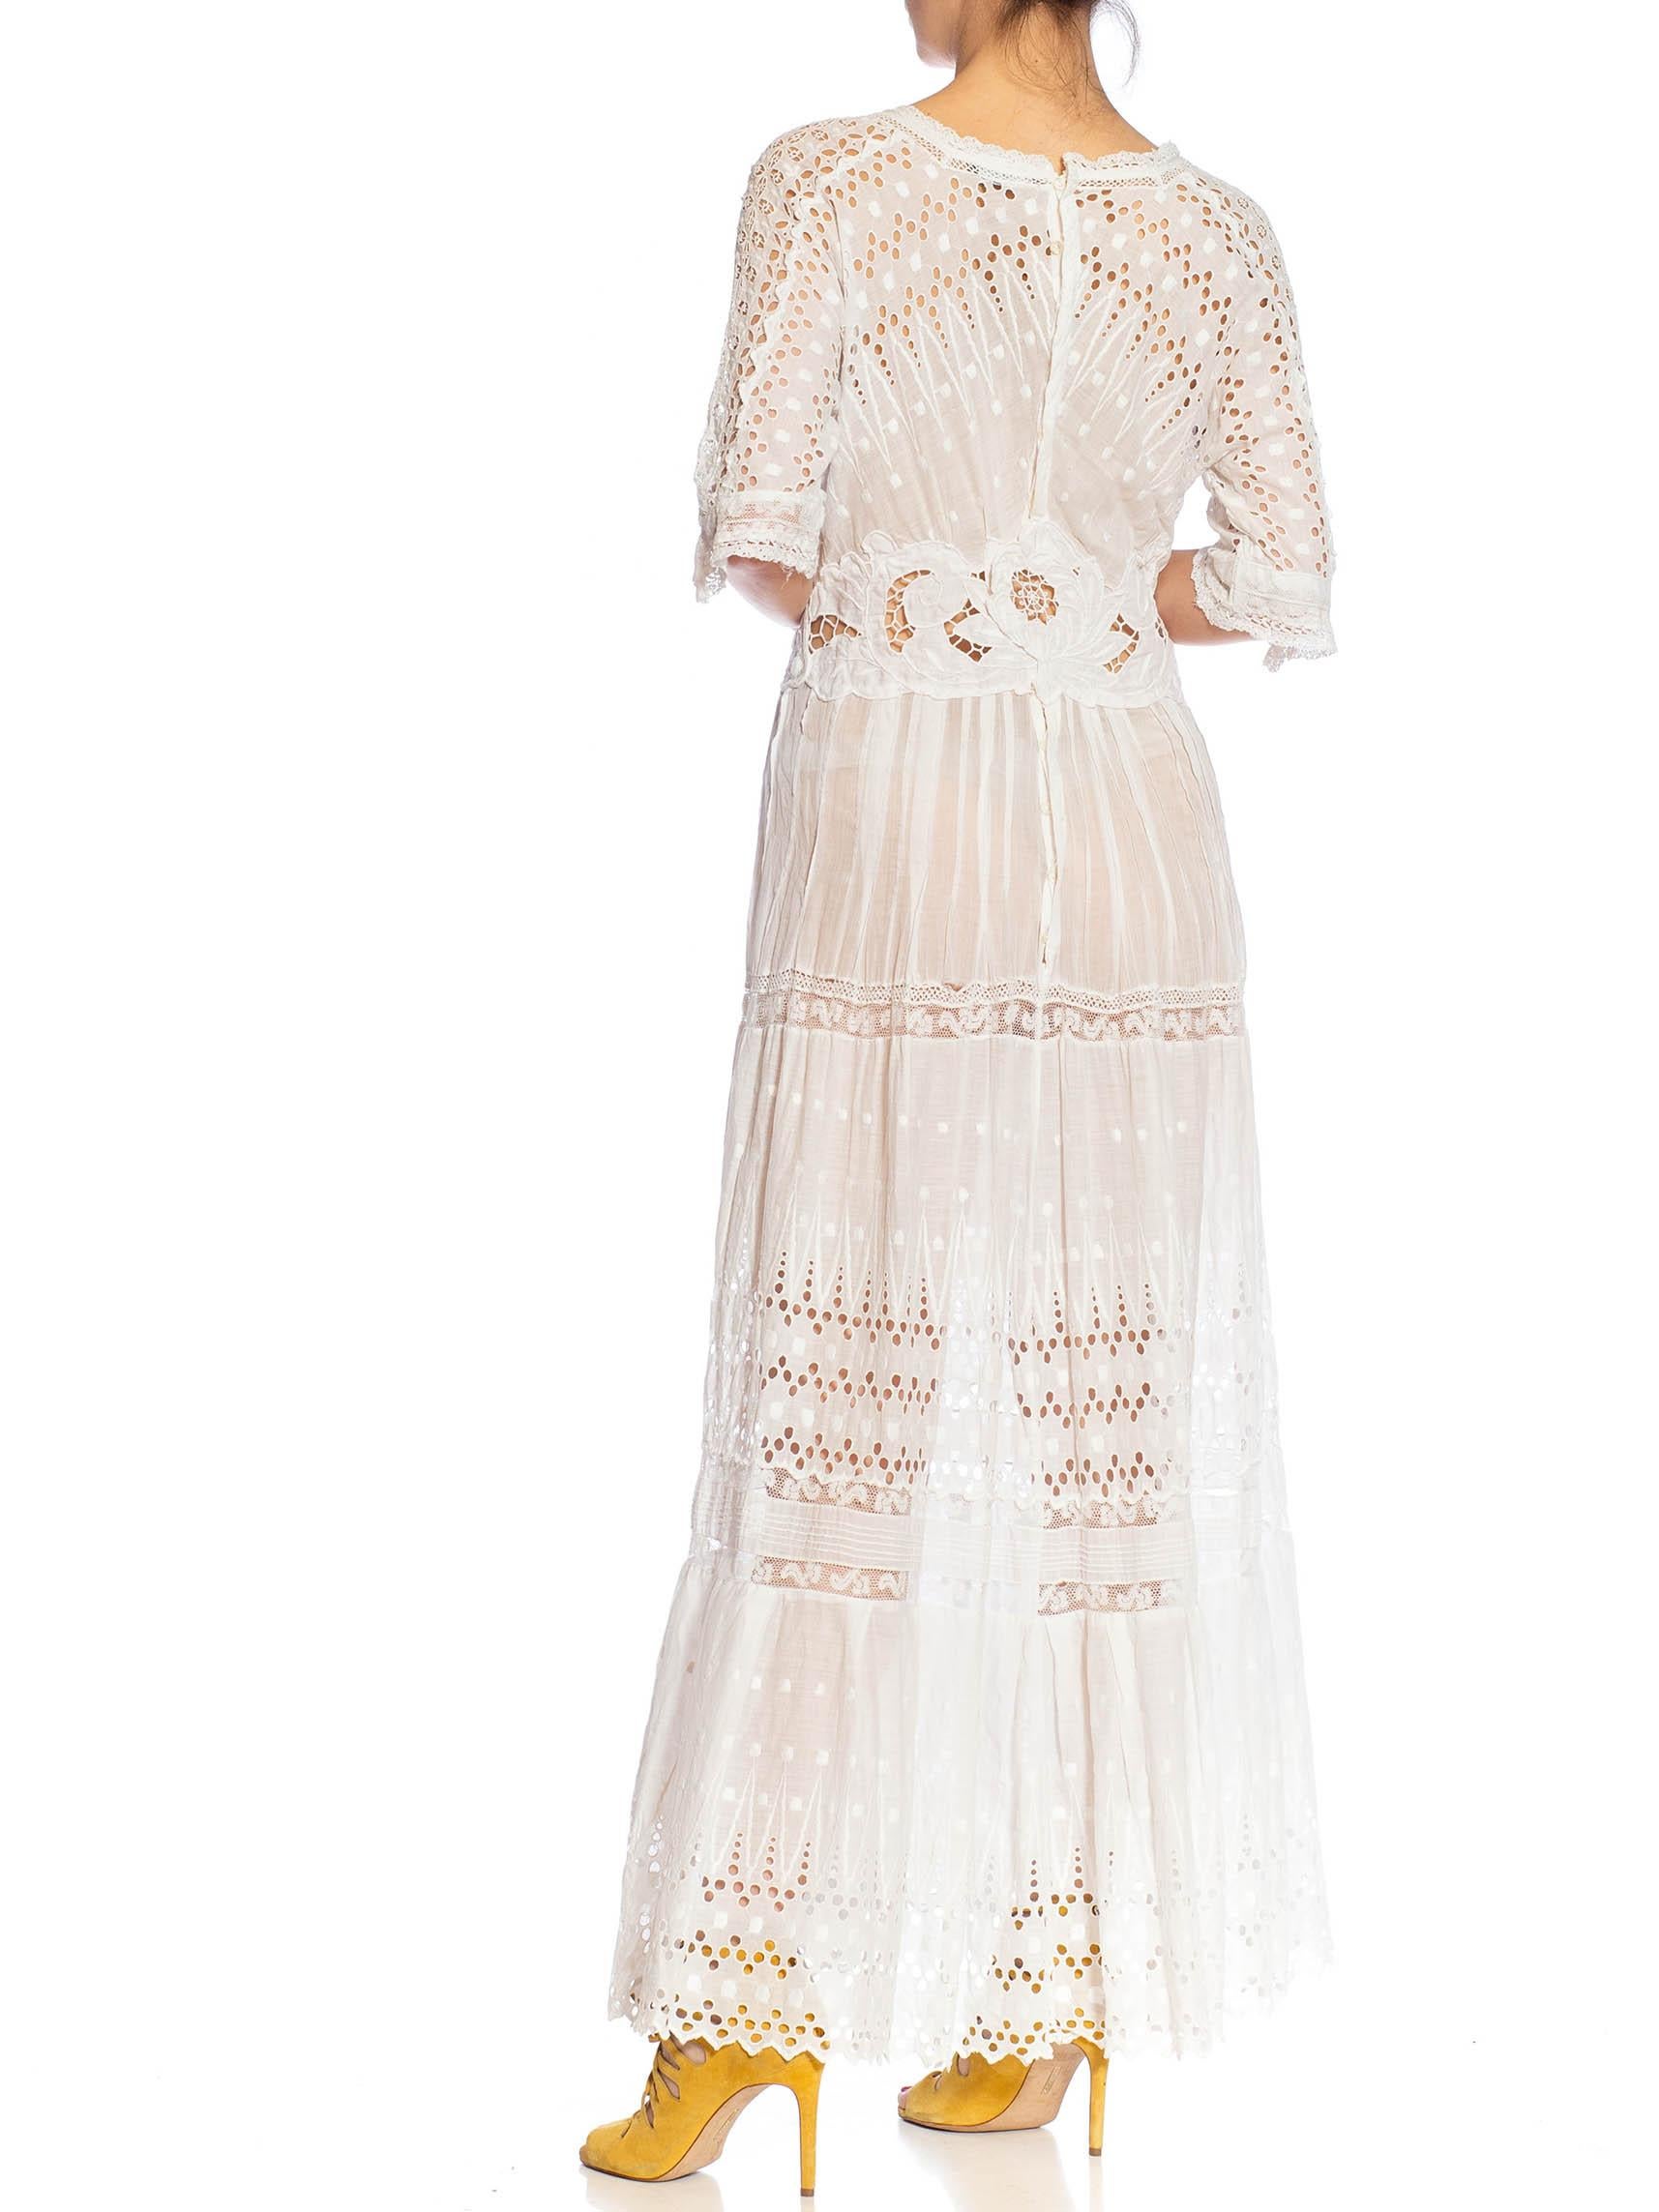 MORPHEW ATELIER White Organic Cotton Antique Lace Dress For Sale 4